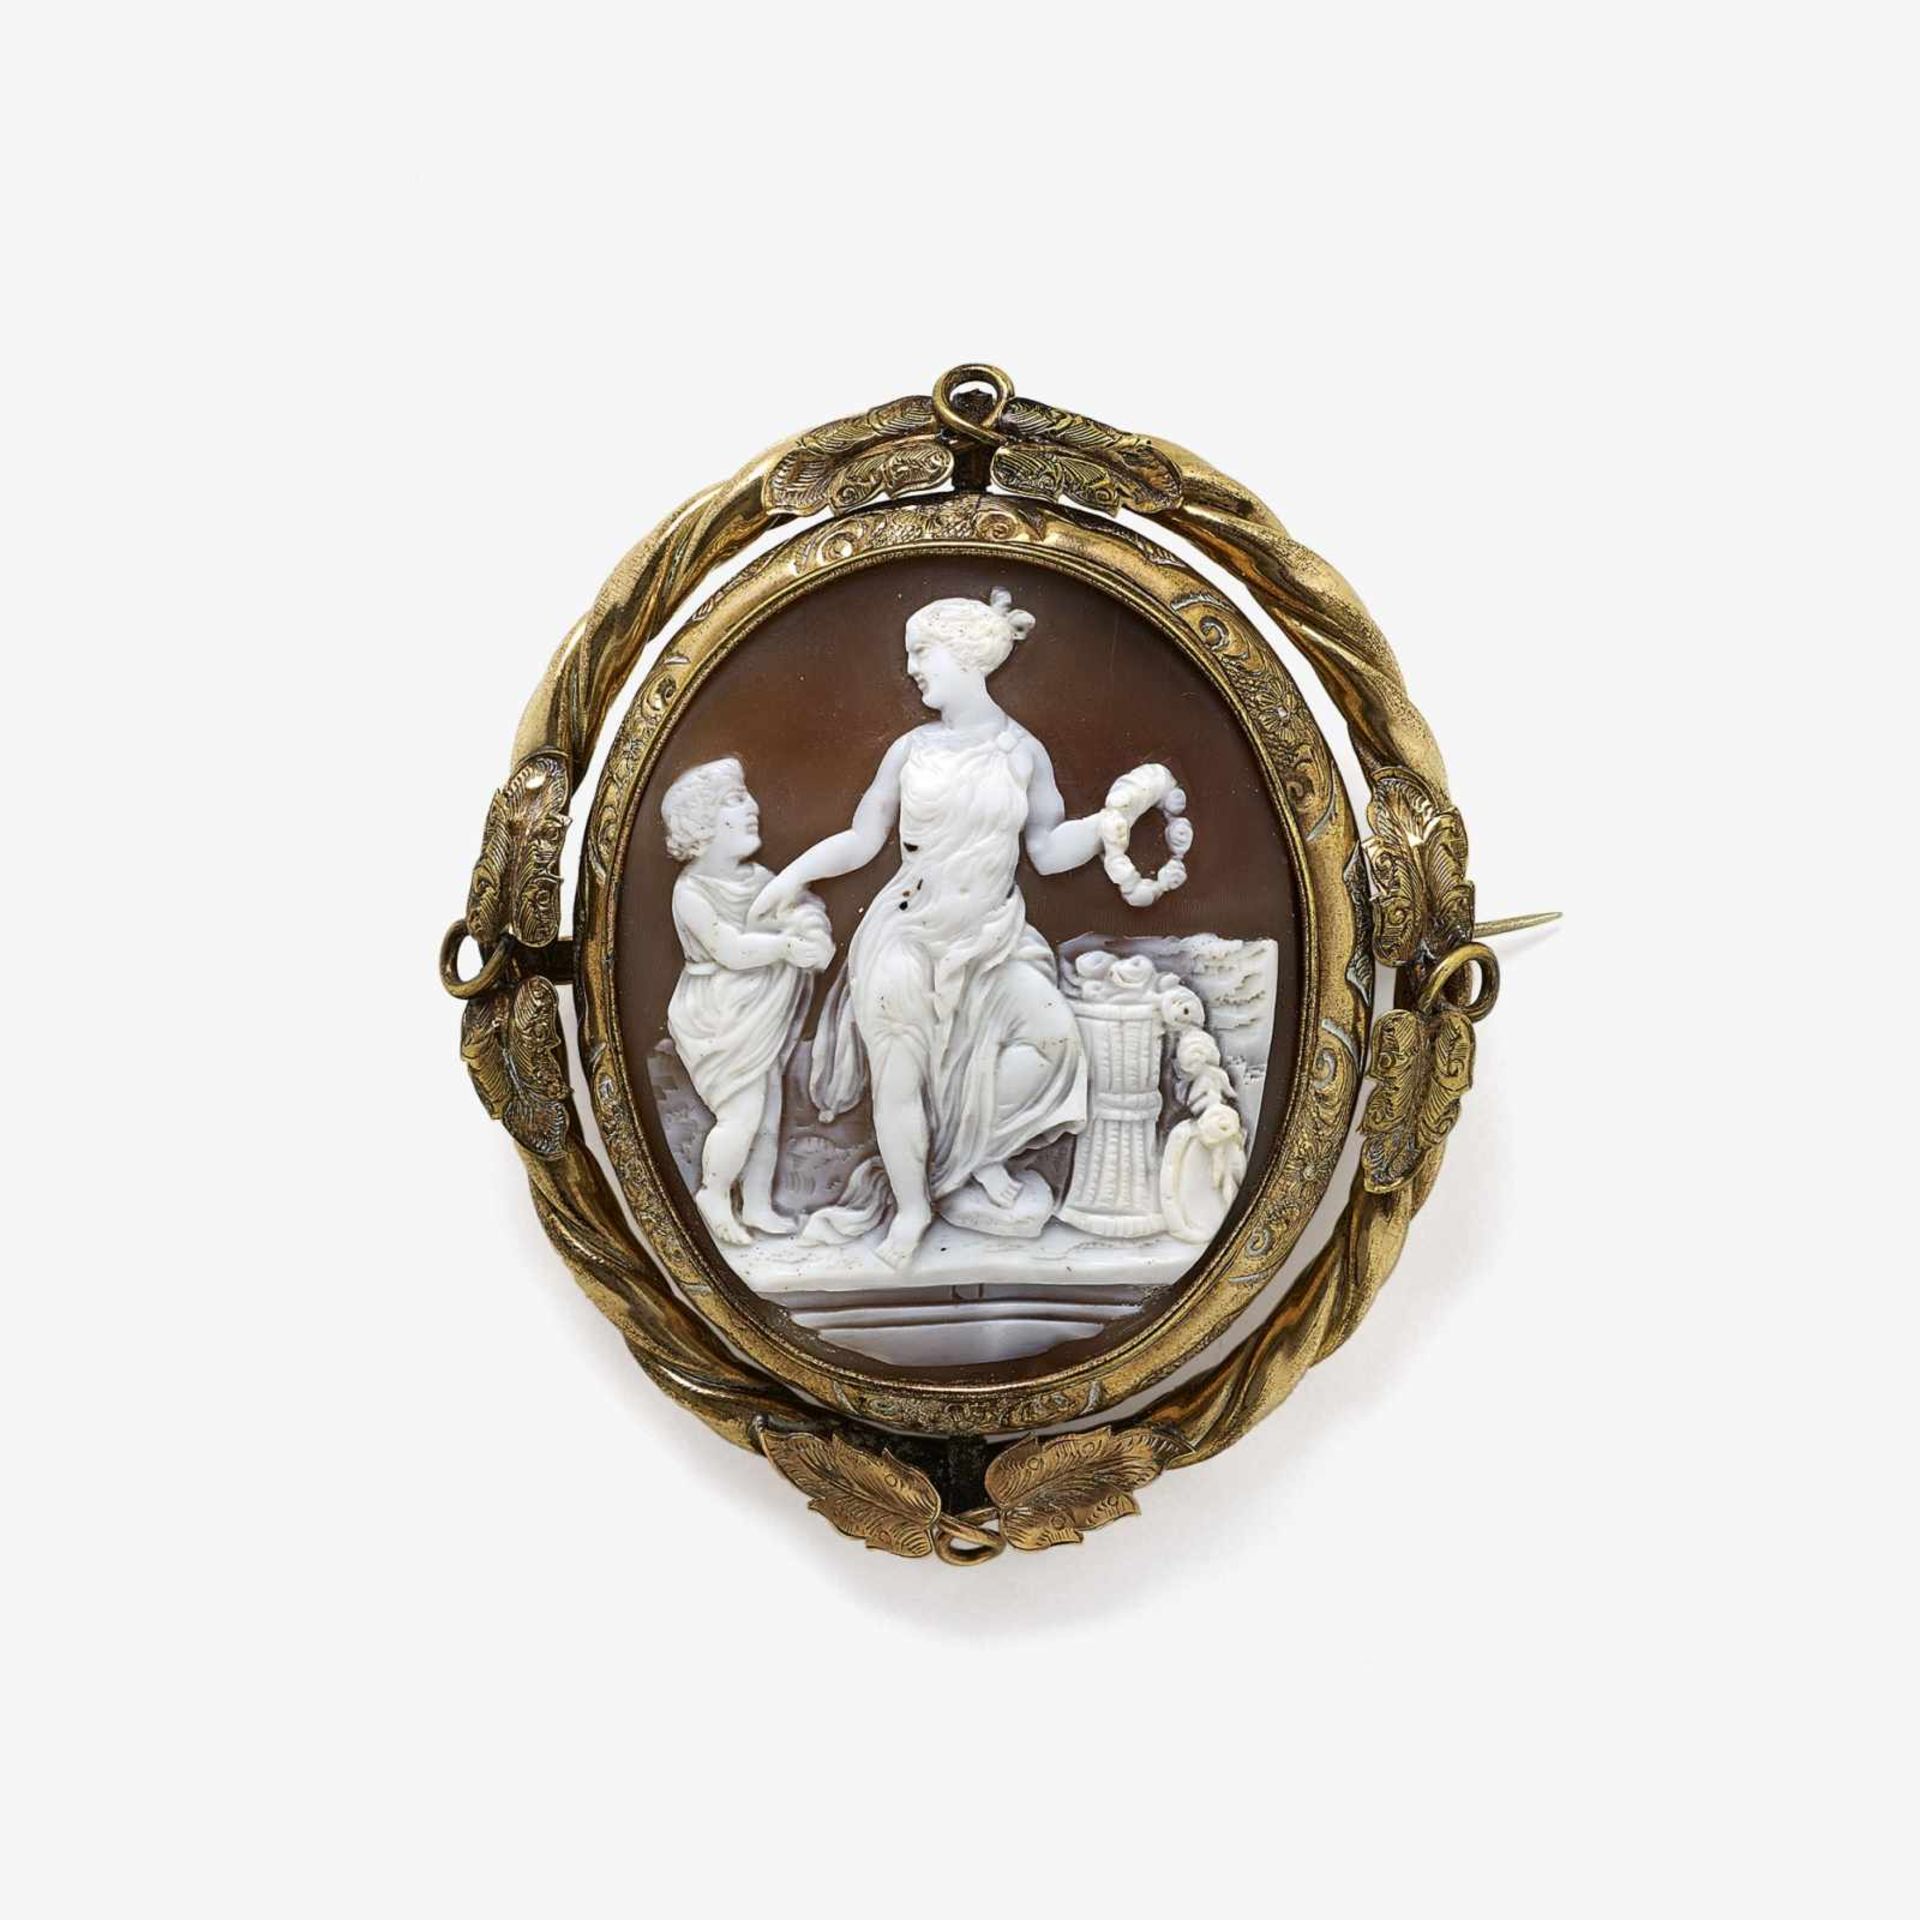 BROSCHE MIT MUSCHELKAMEE Neapel und England, um 1840-1850 Pinchbeck. Muschelkamee. Ca. 7,1 x 6 cm.